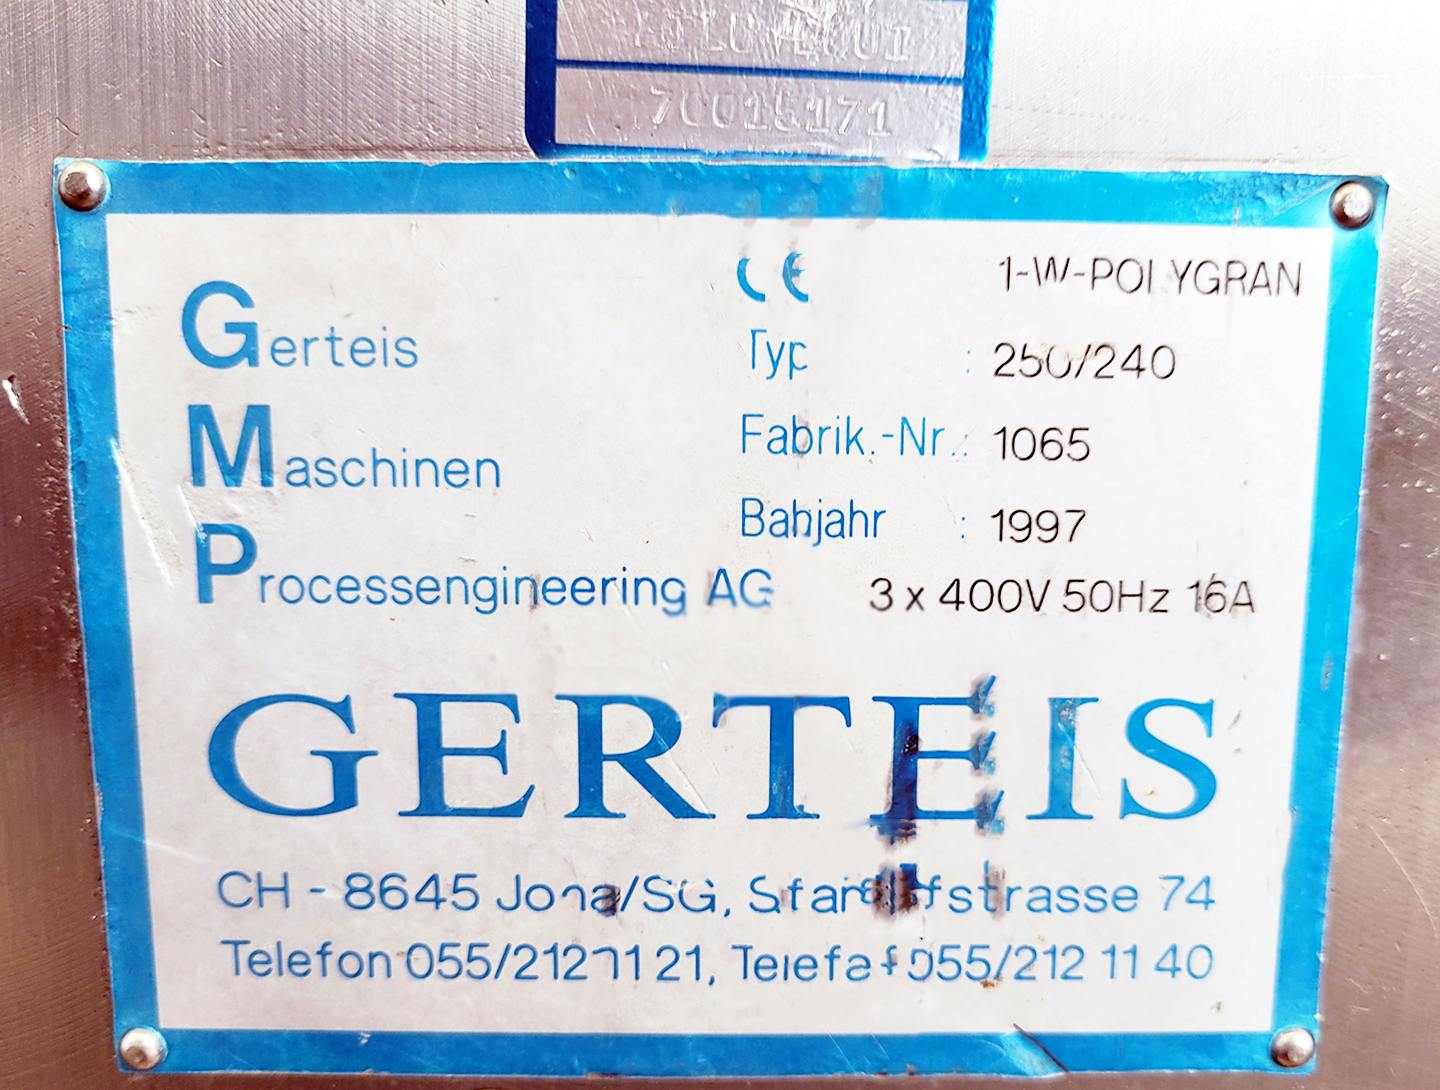 Gerteis 1-W-Polygran 250/240 - Peneira granuladora - image 18